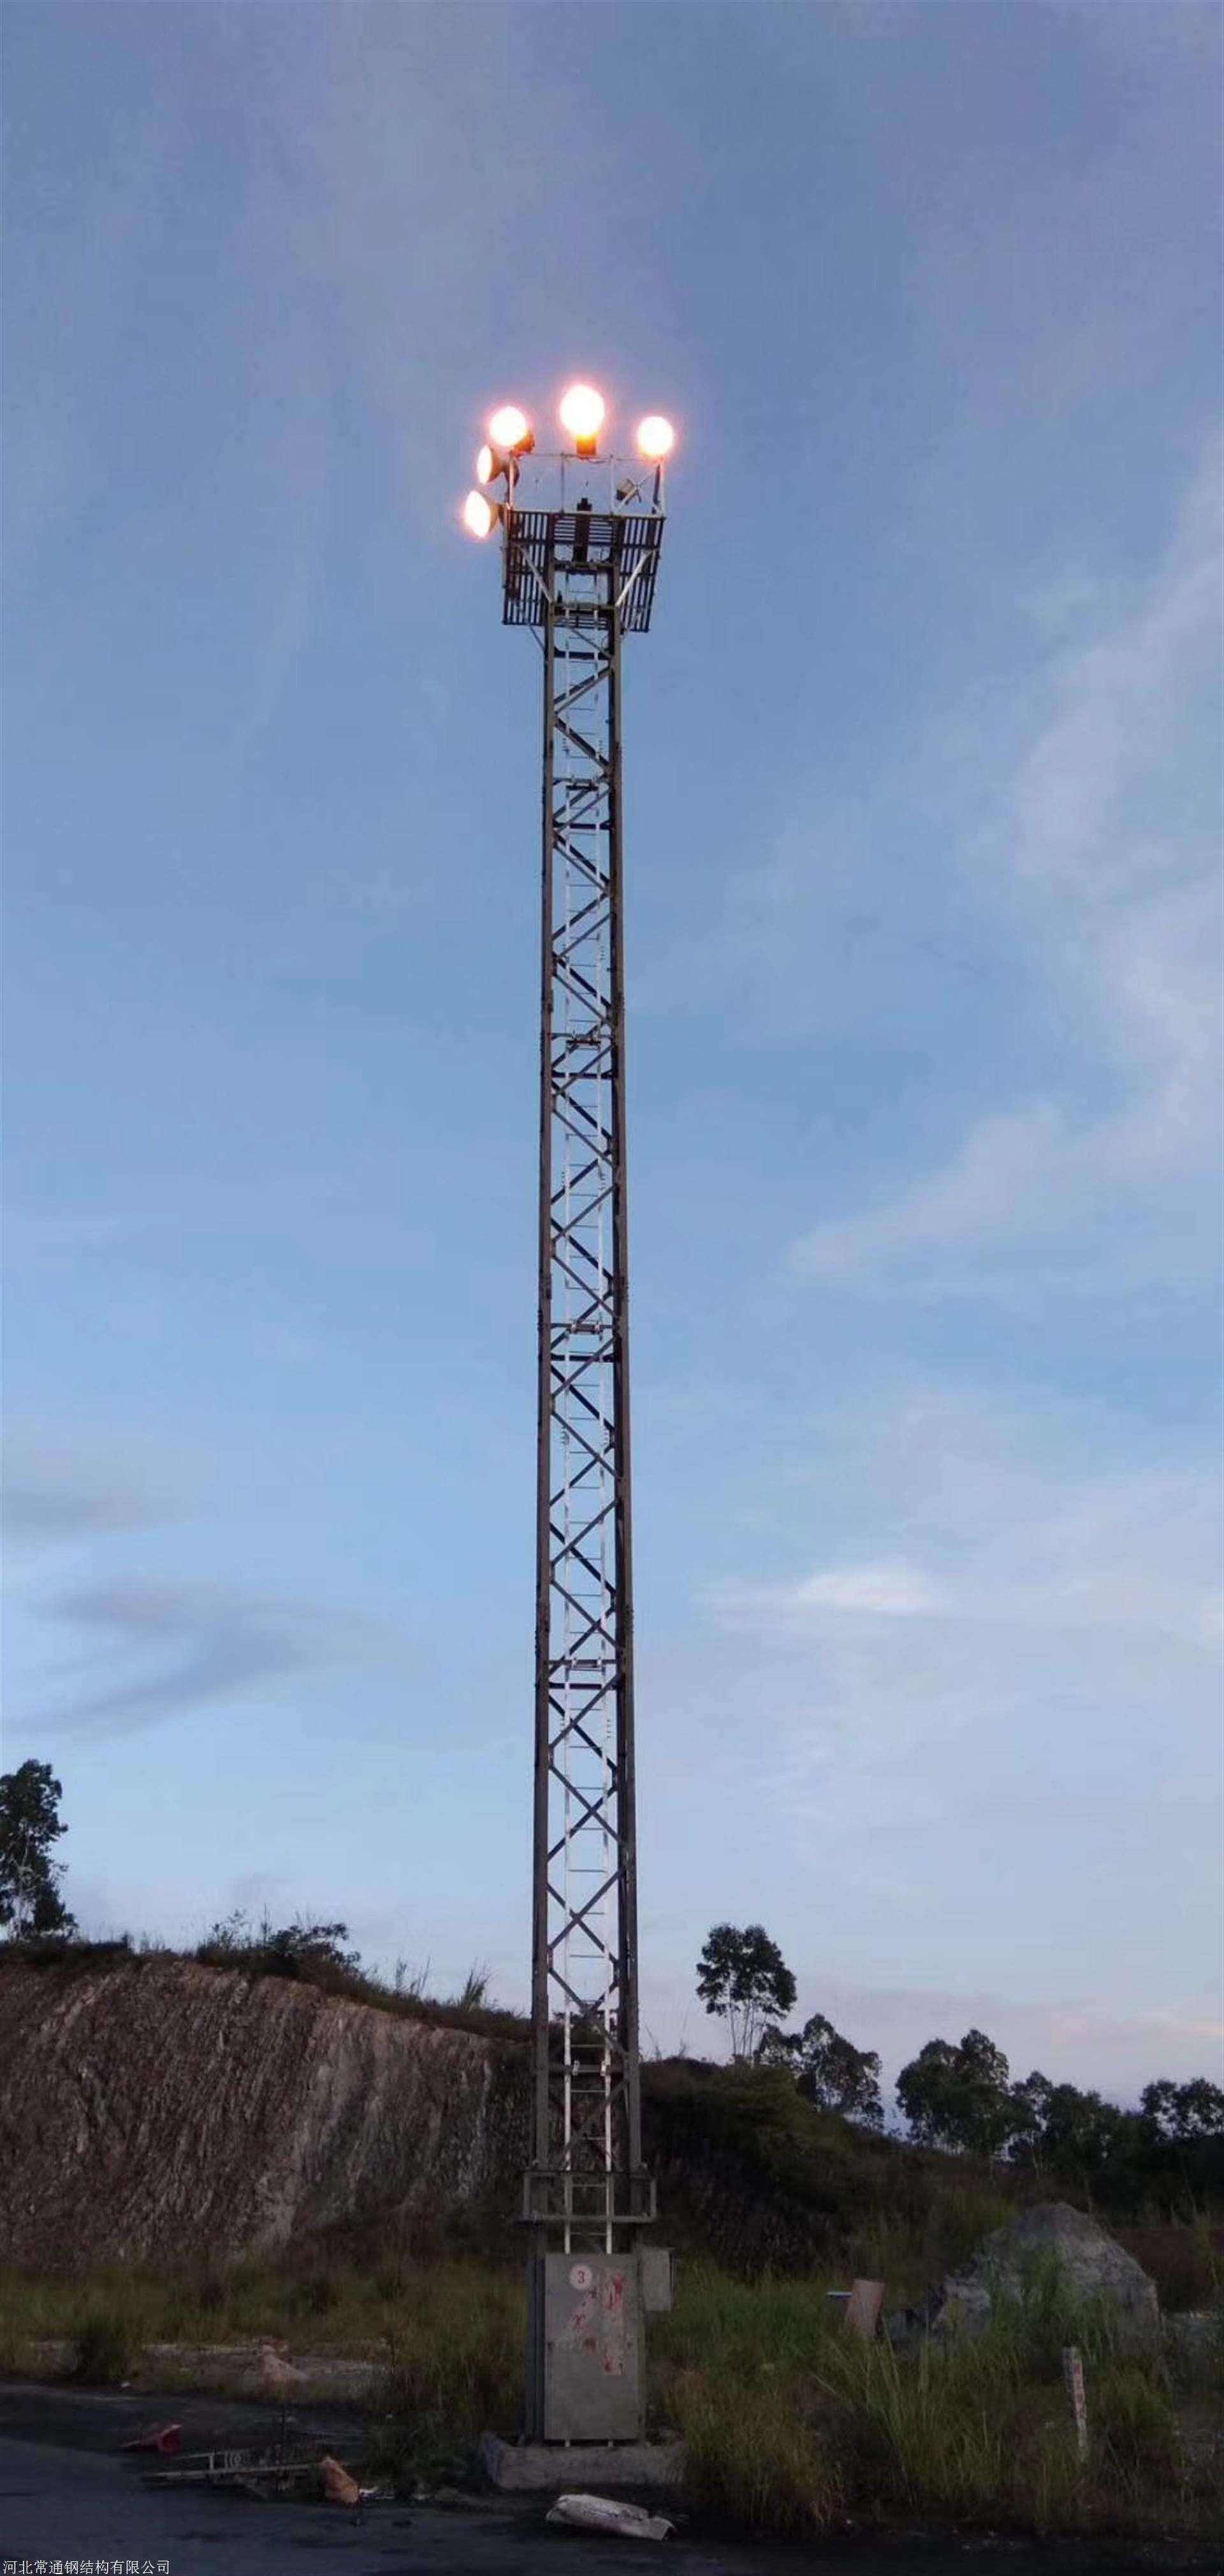 固定式投光灯塔21.5米 铁路升降式照明灯塔施工